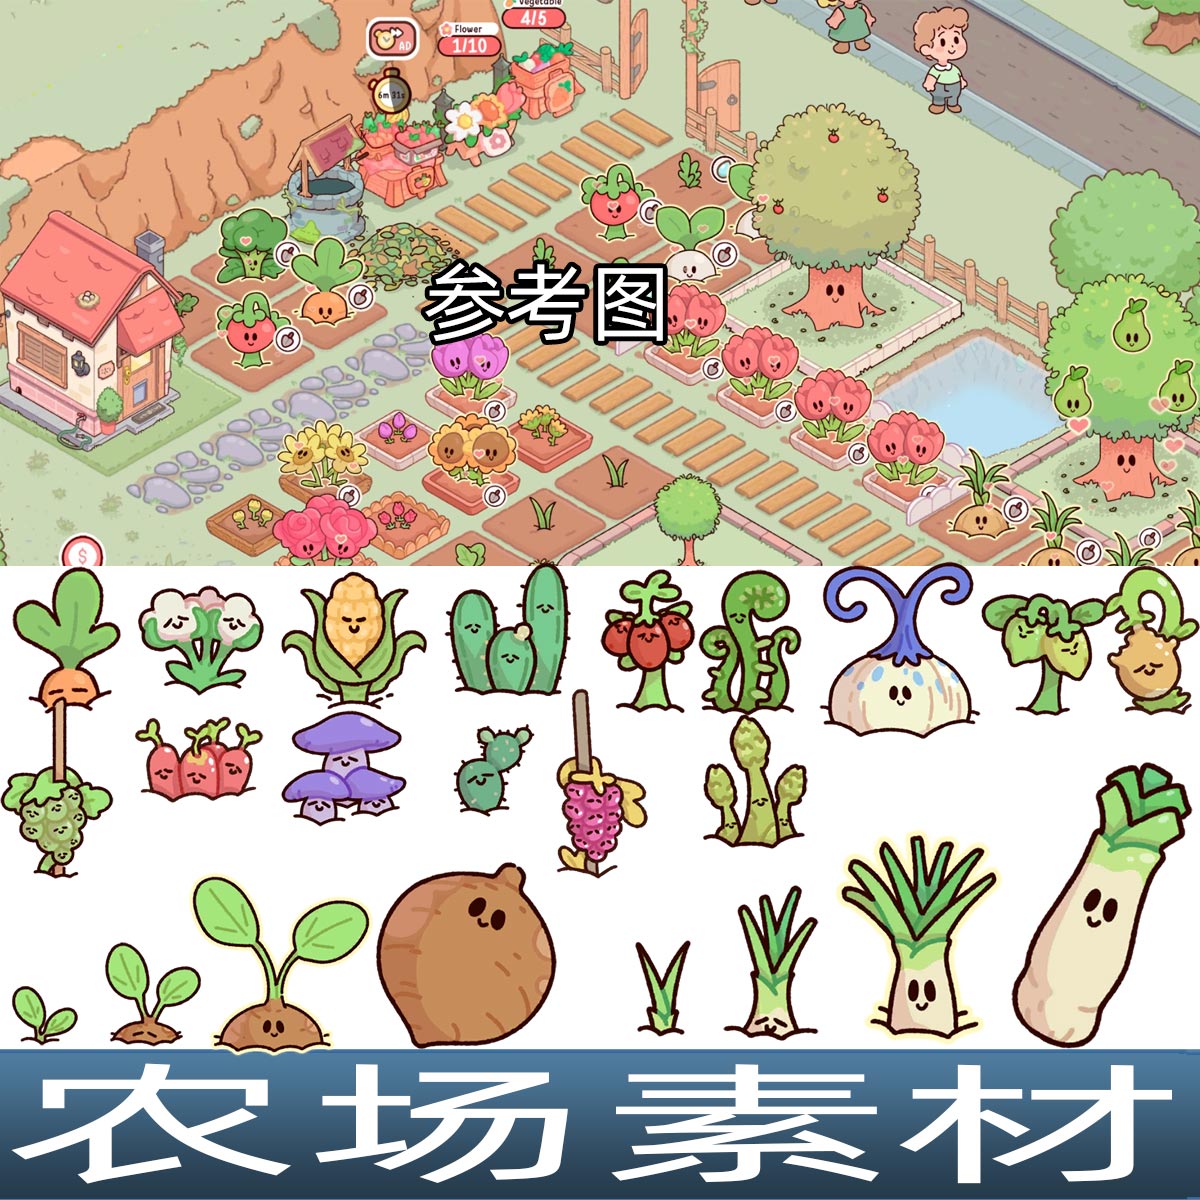 卡通手绘风格植物作物蔬菜花卉农场模拟经营手游游戏UI音效素材